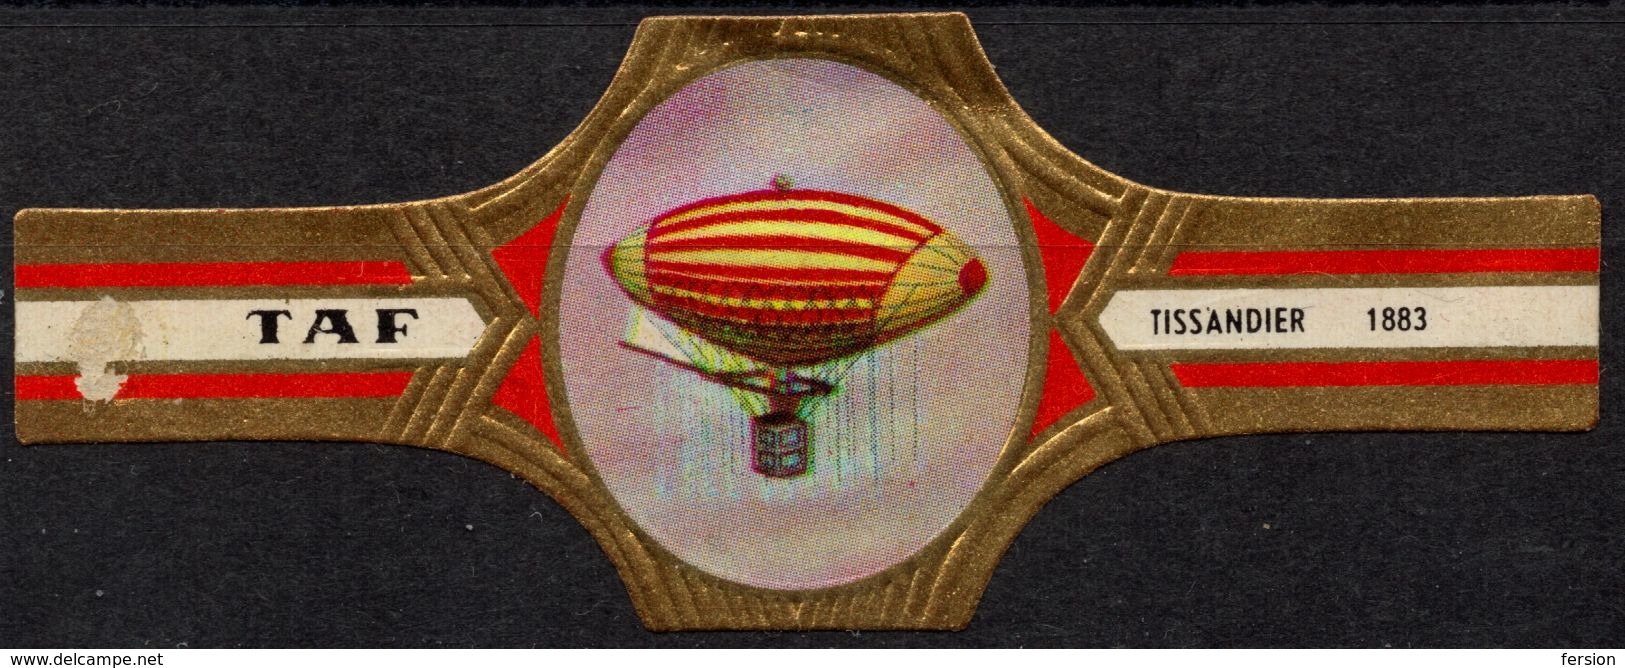 Belgium Belgique - TAF - Tissandier Ballon Zeppelin - CIGAR Label Vignette - Labels